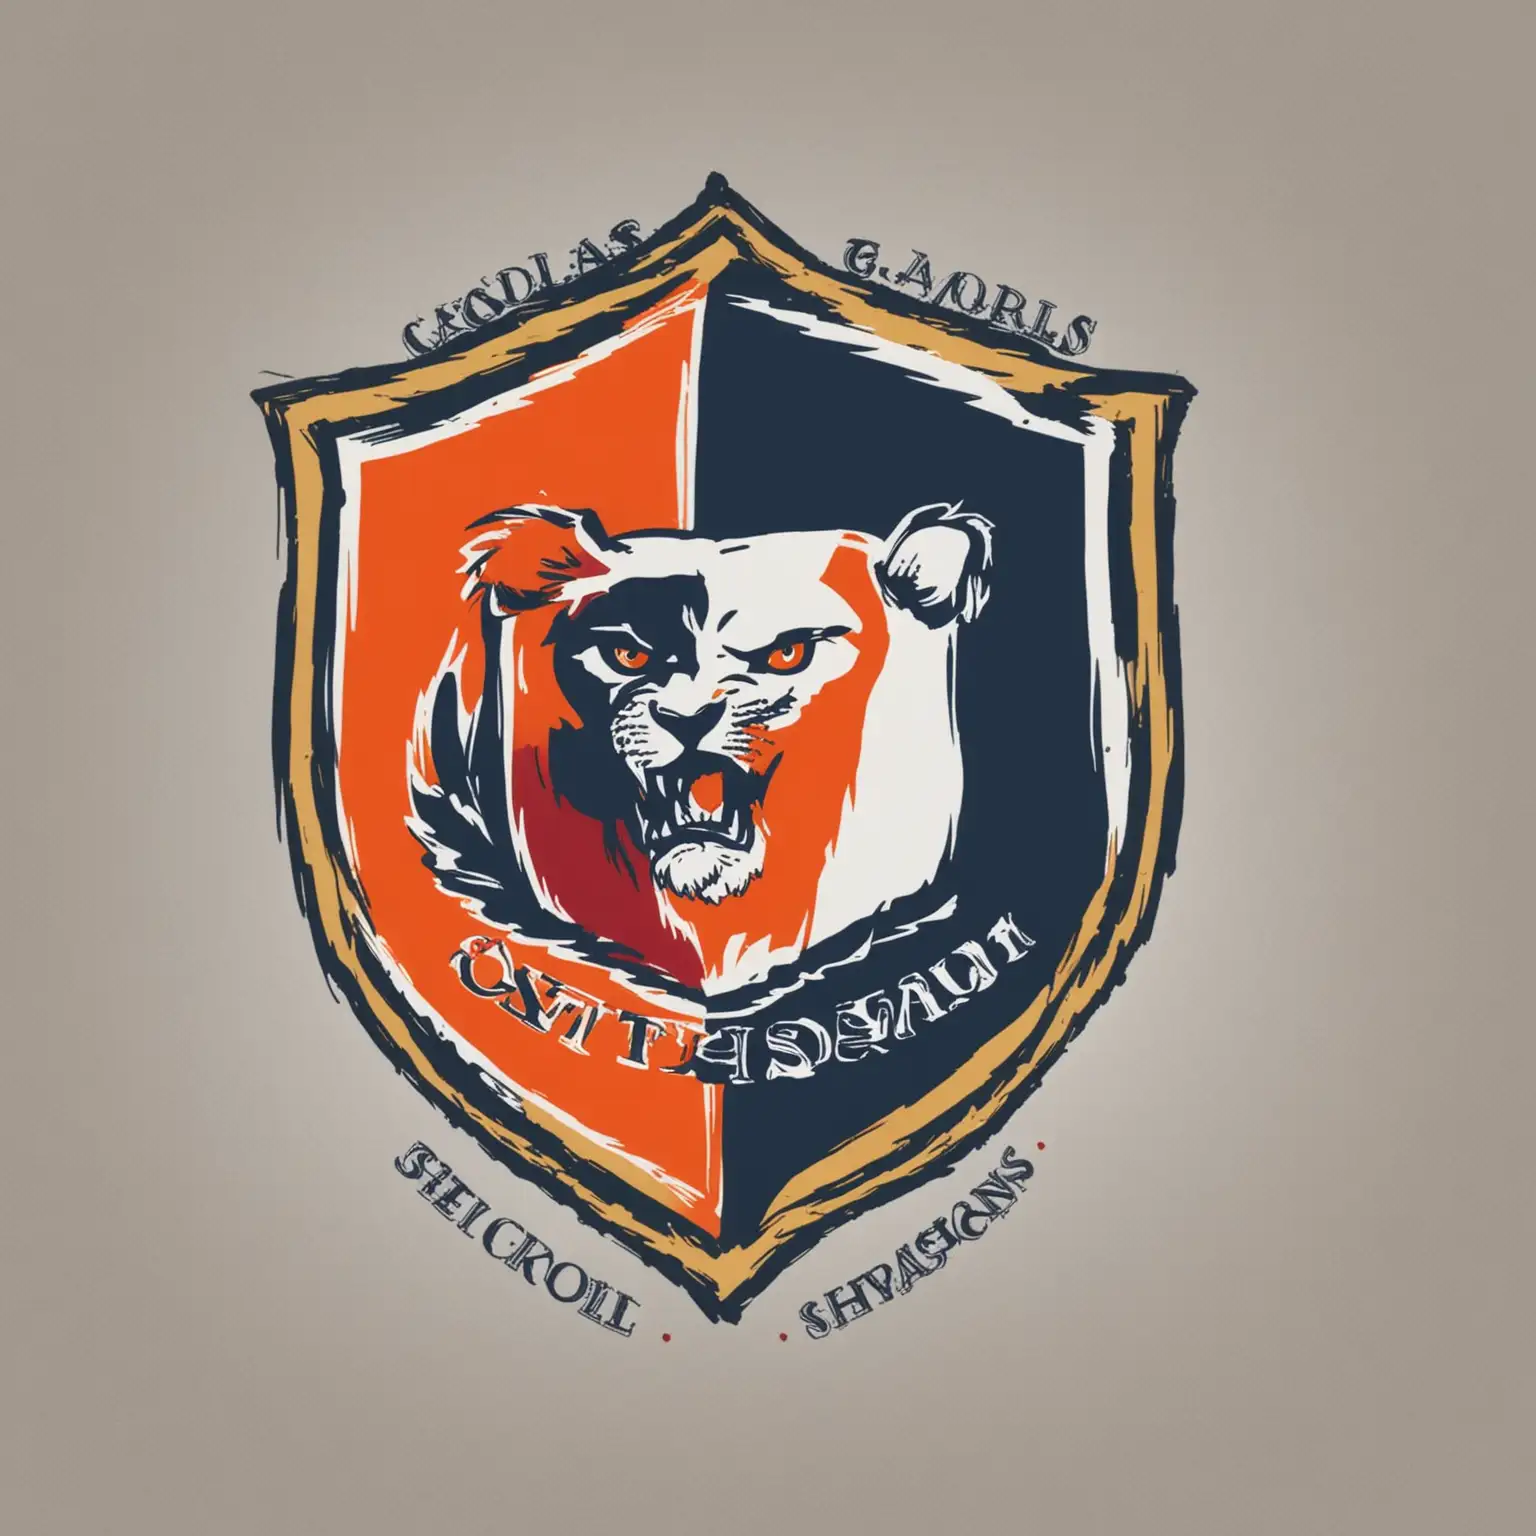 Skolors School Vintage Emblem Logo Design